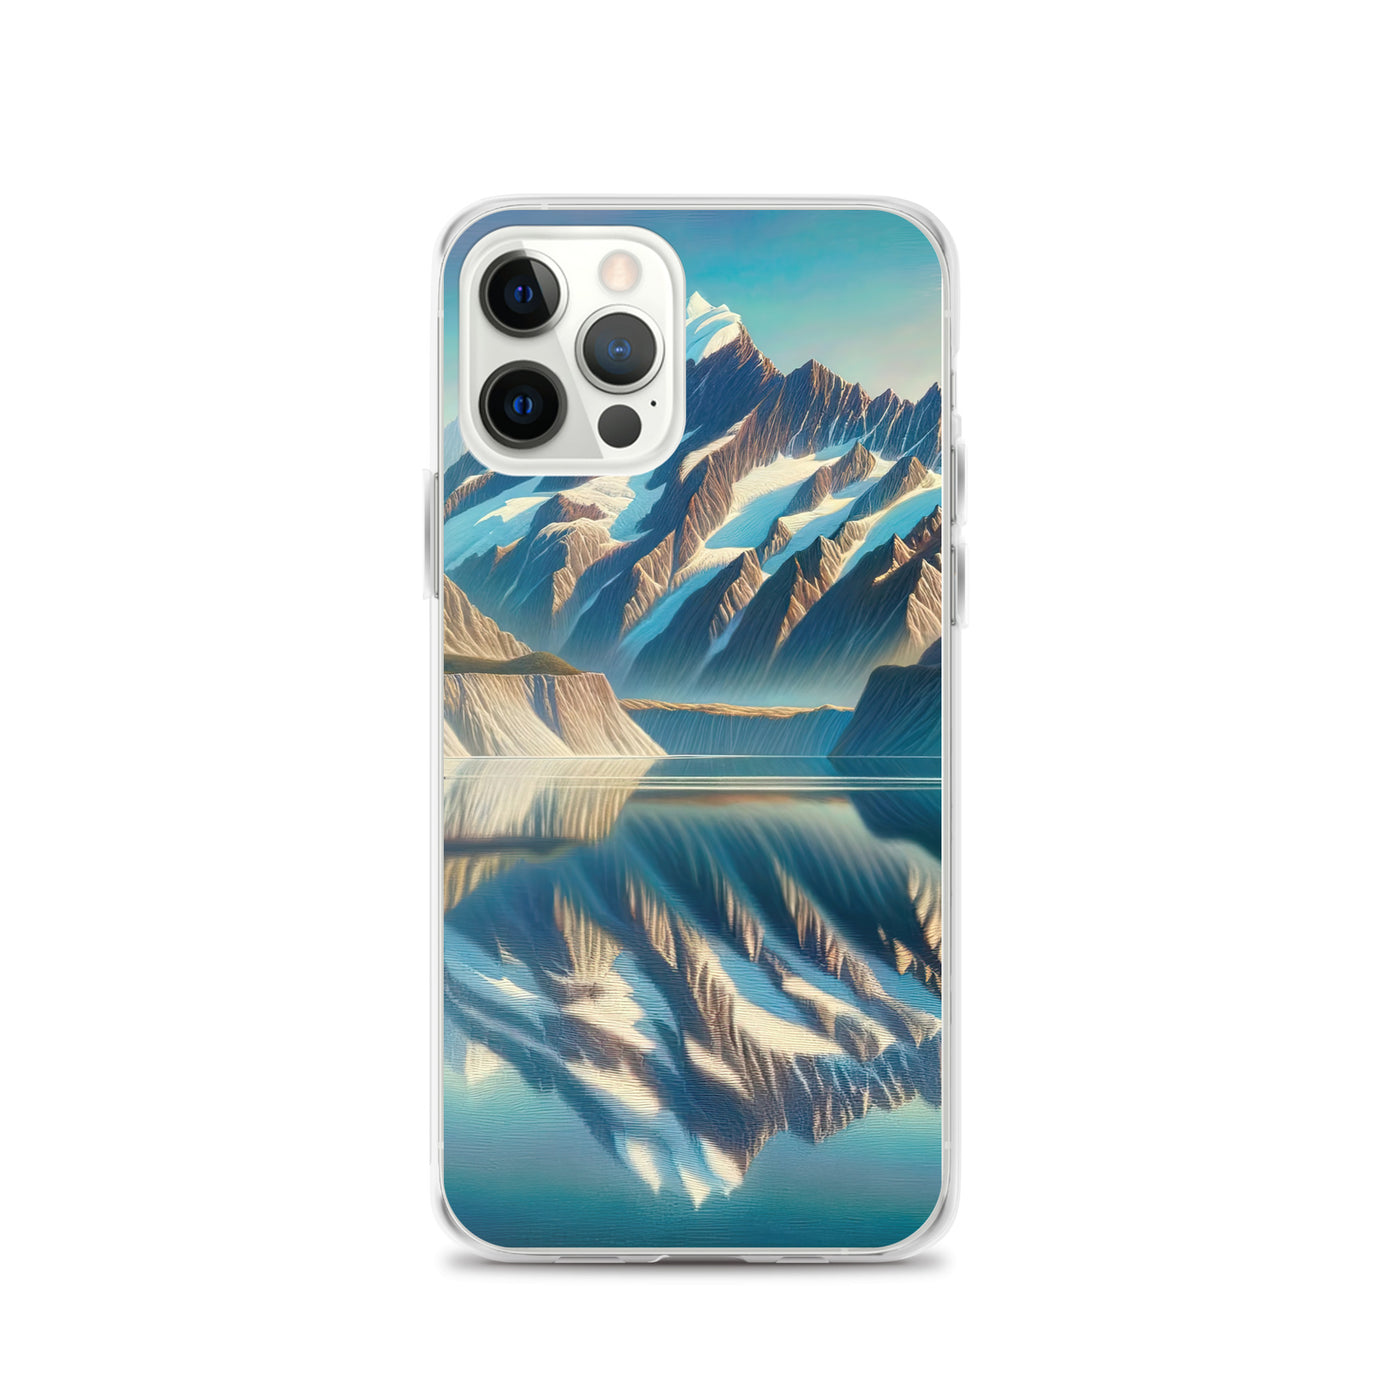 Ölgemälde eines unberührten Sees, der die Bergkette spiegelt - iPhone Schutzhülle (durchsichtig) berge xxx yyy zzz iPhone 12 Pro